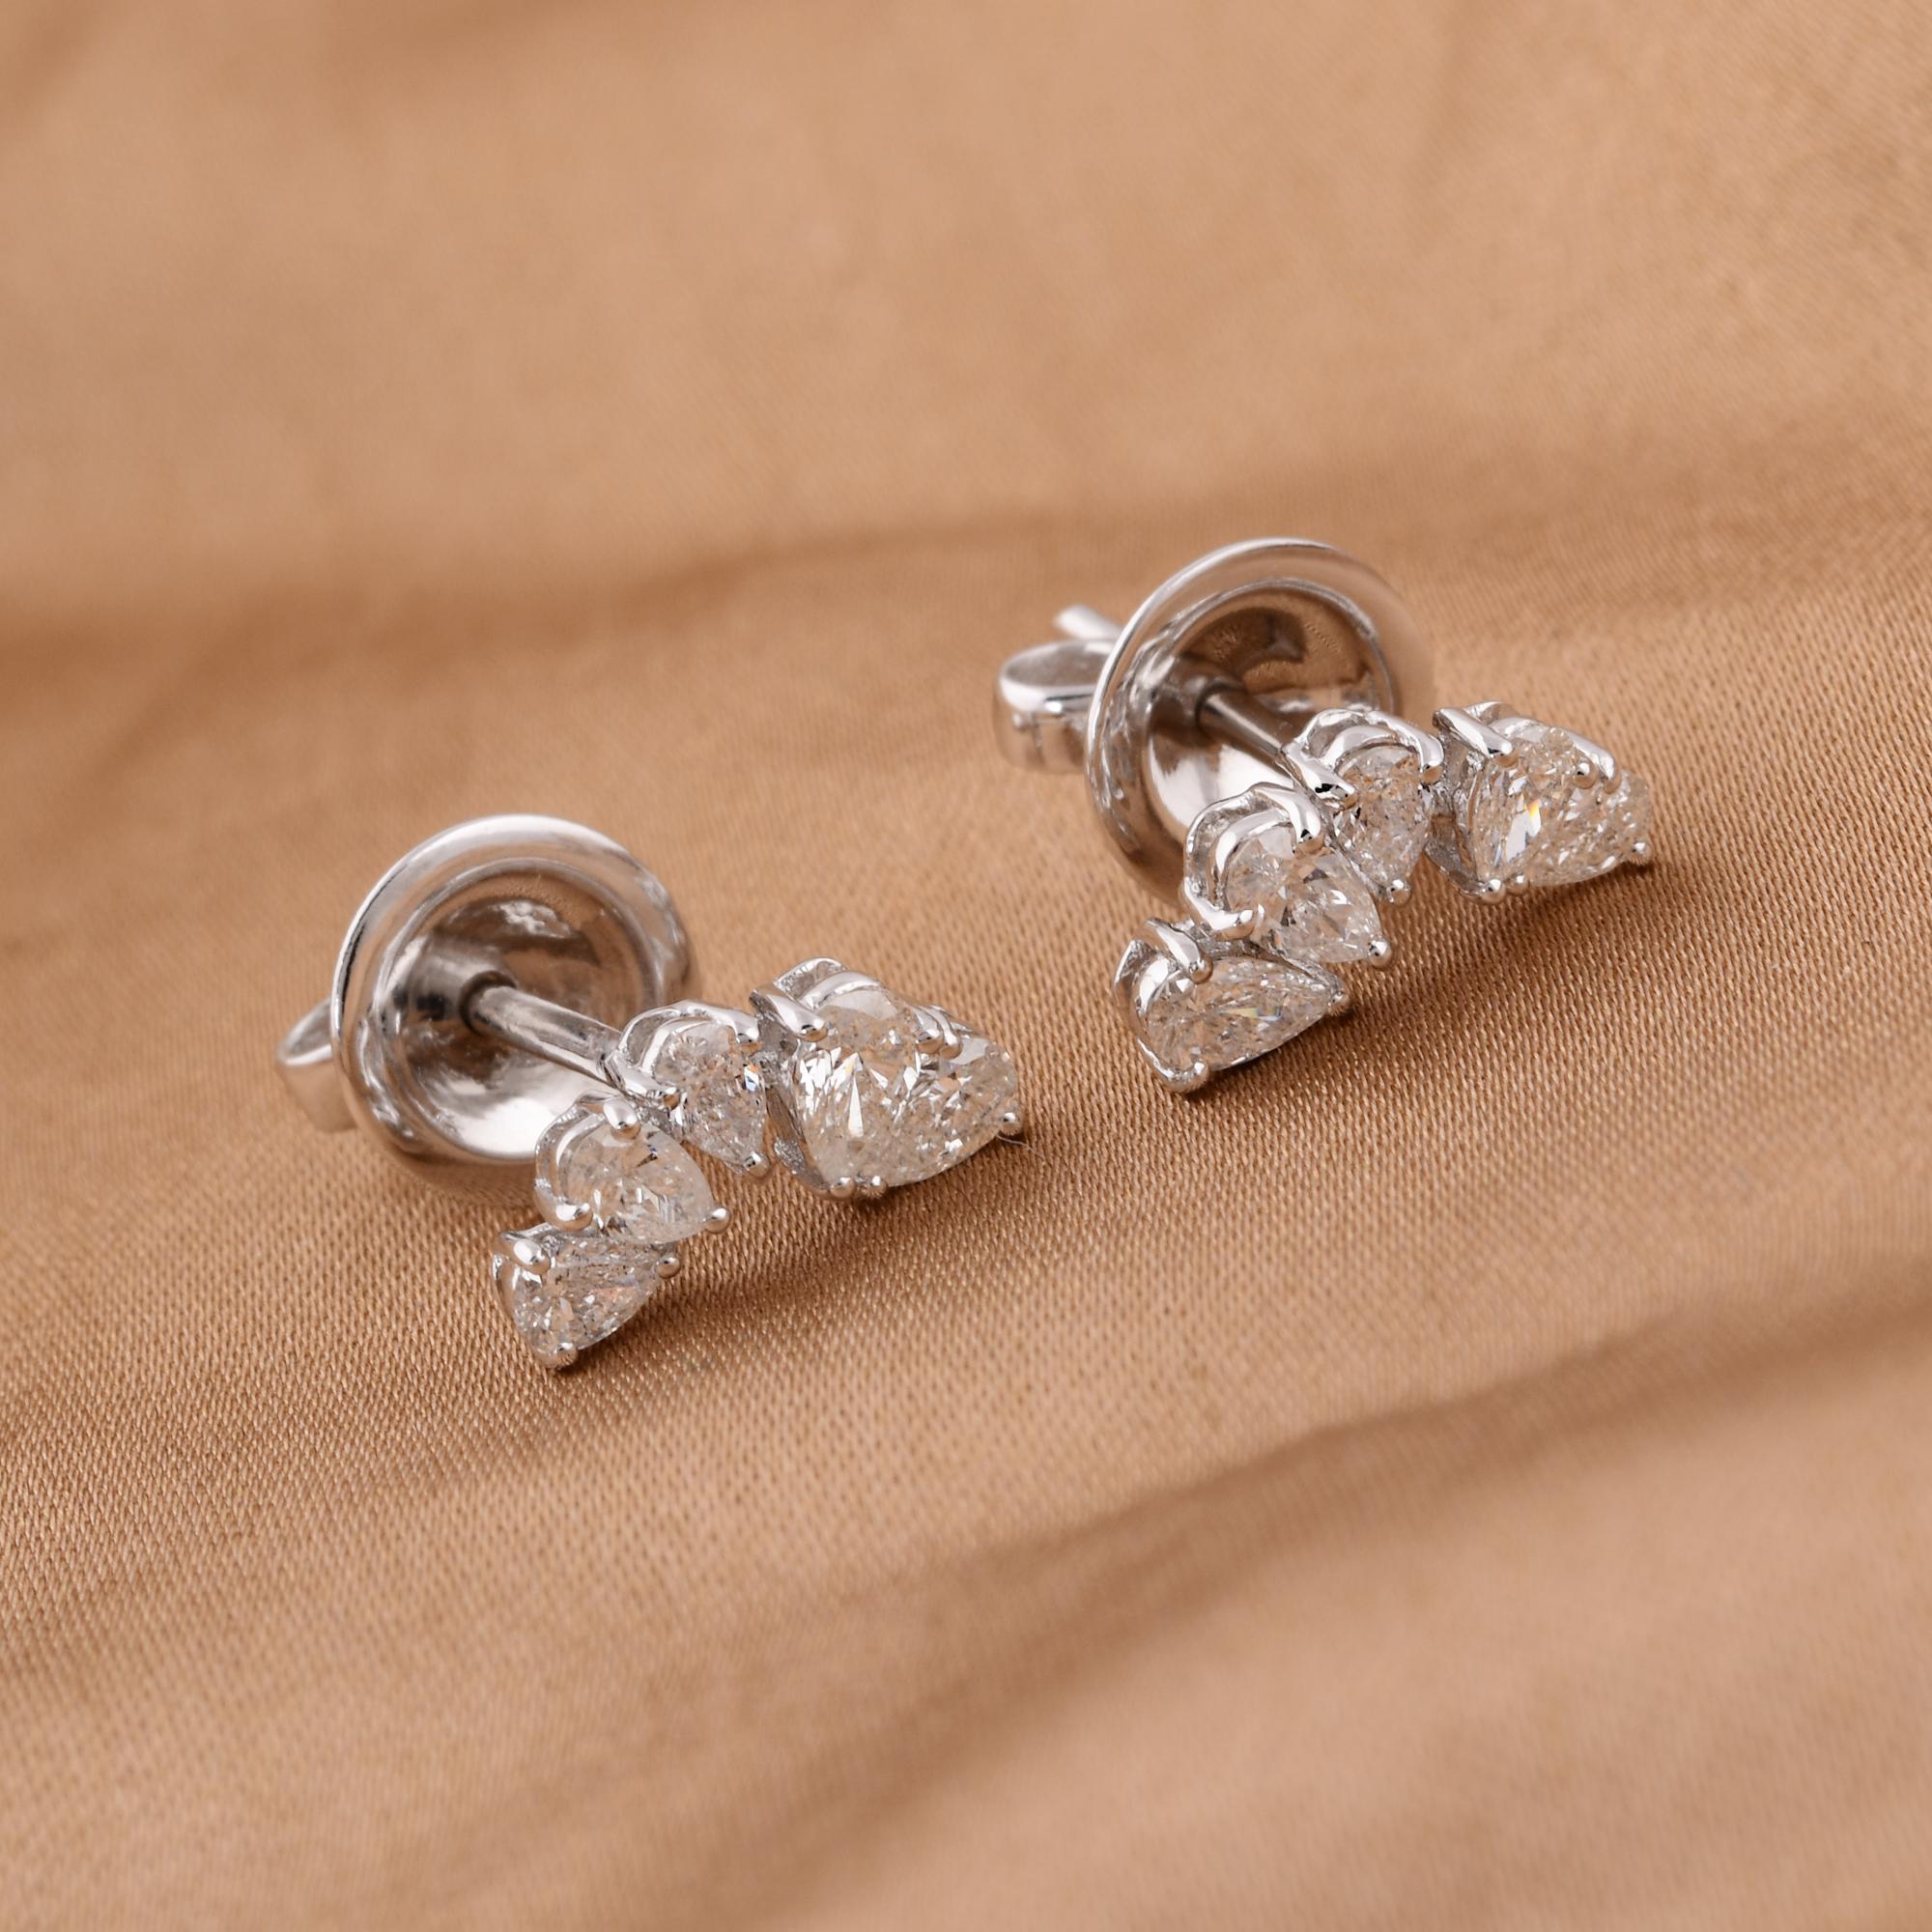 Pear Cut 0.52 Carat Pear Shape Diamond Stud Earrings 18 Karat White Gold Handmade Jewelry For Sale